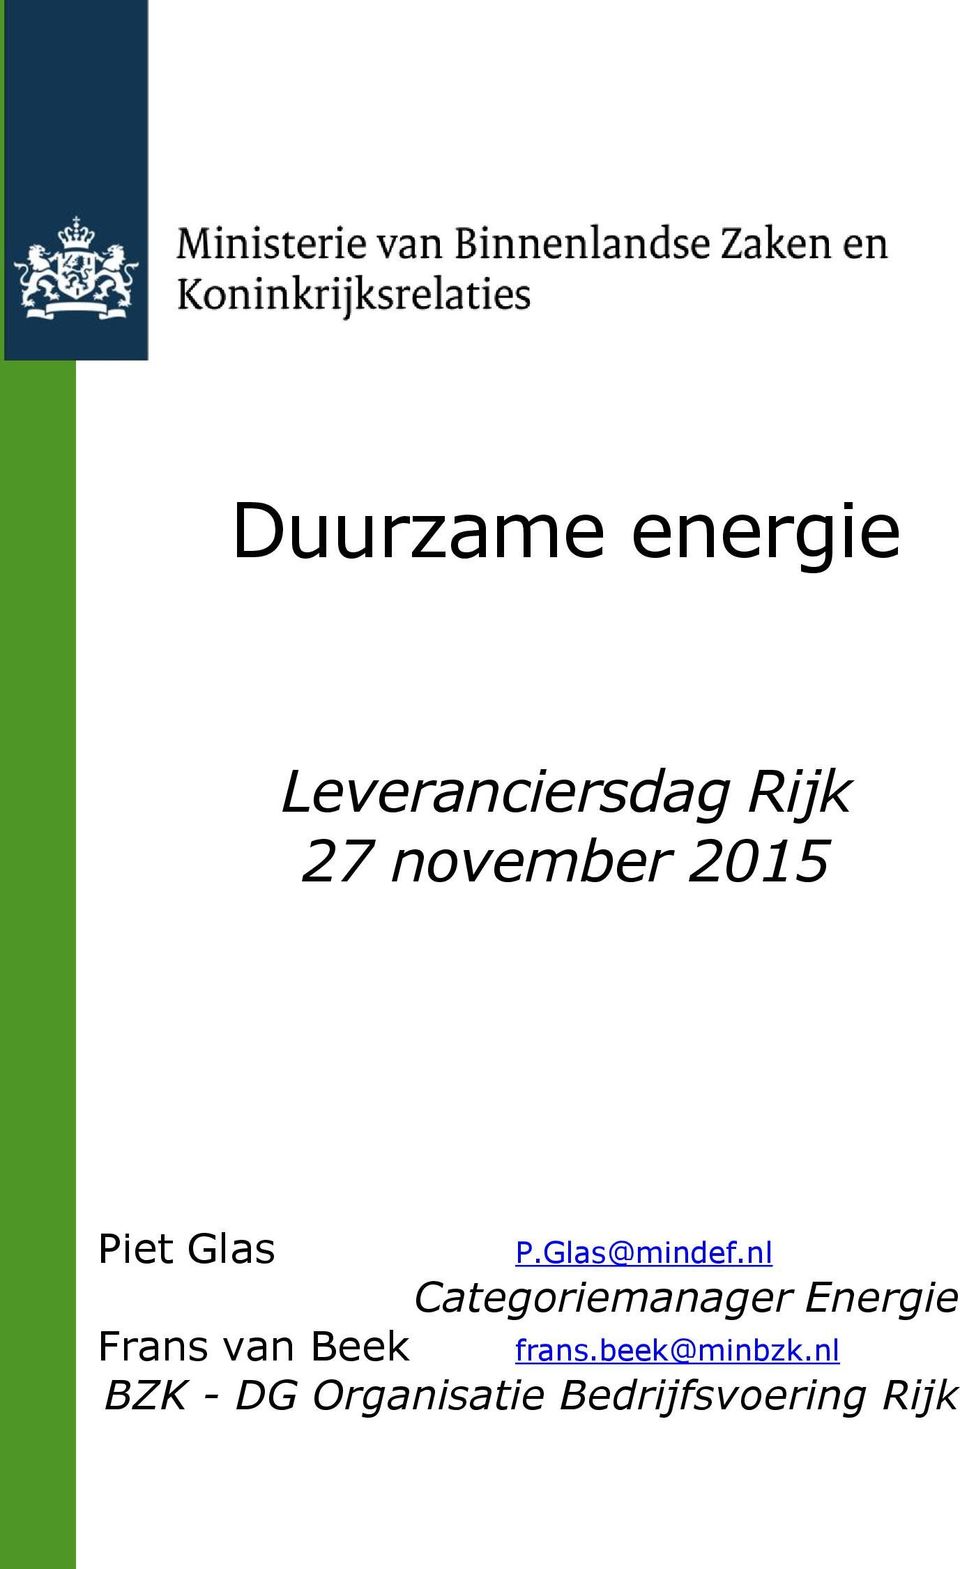 nl Categoriemanager Energie Frans van Beek